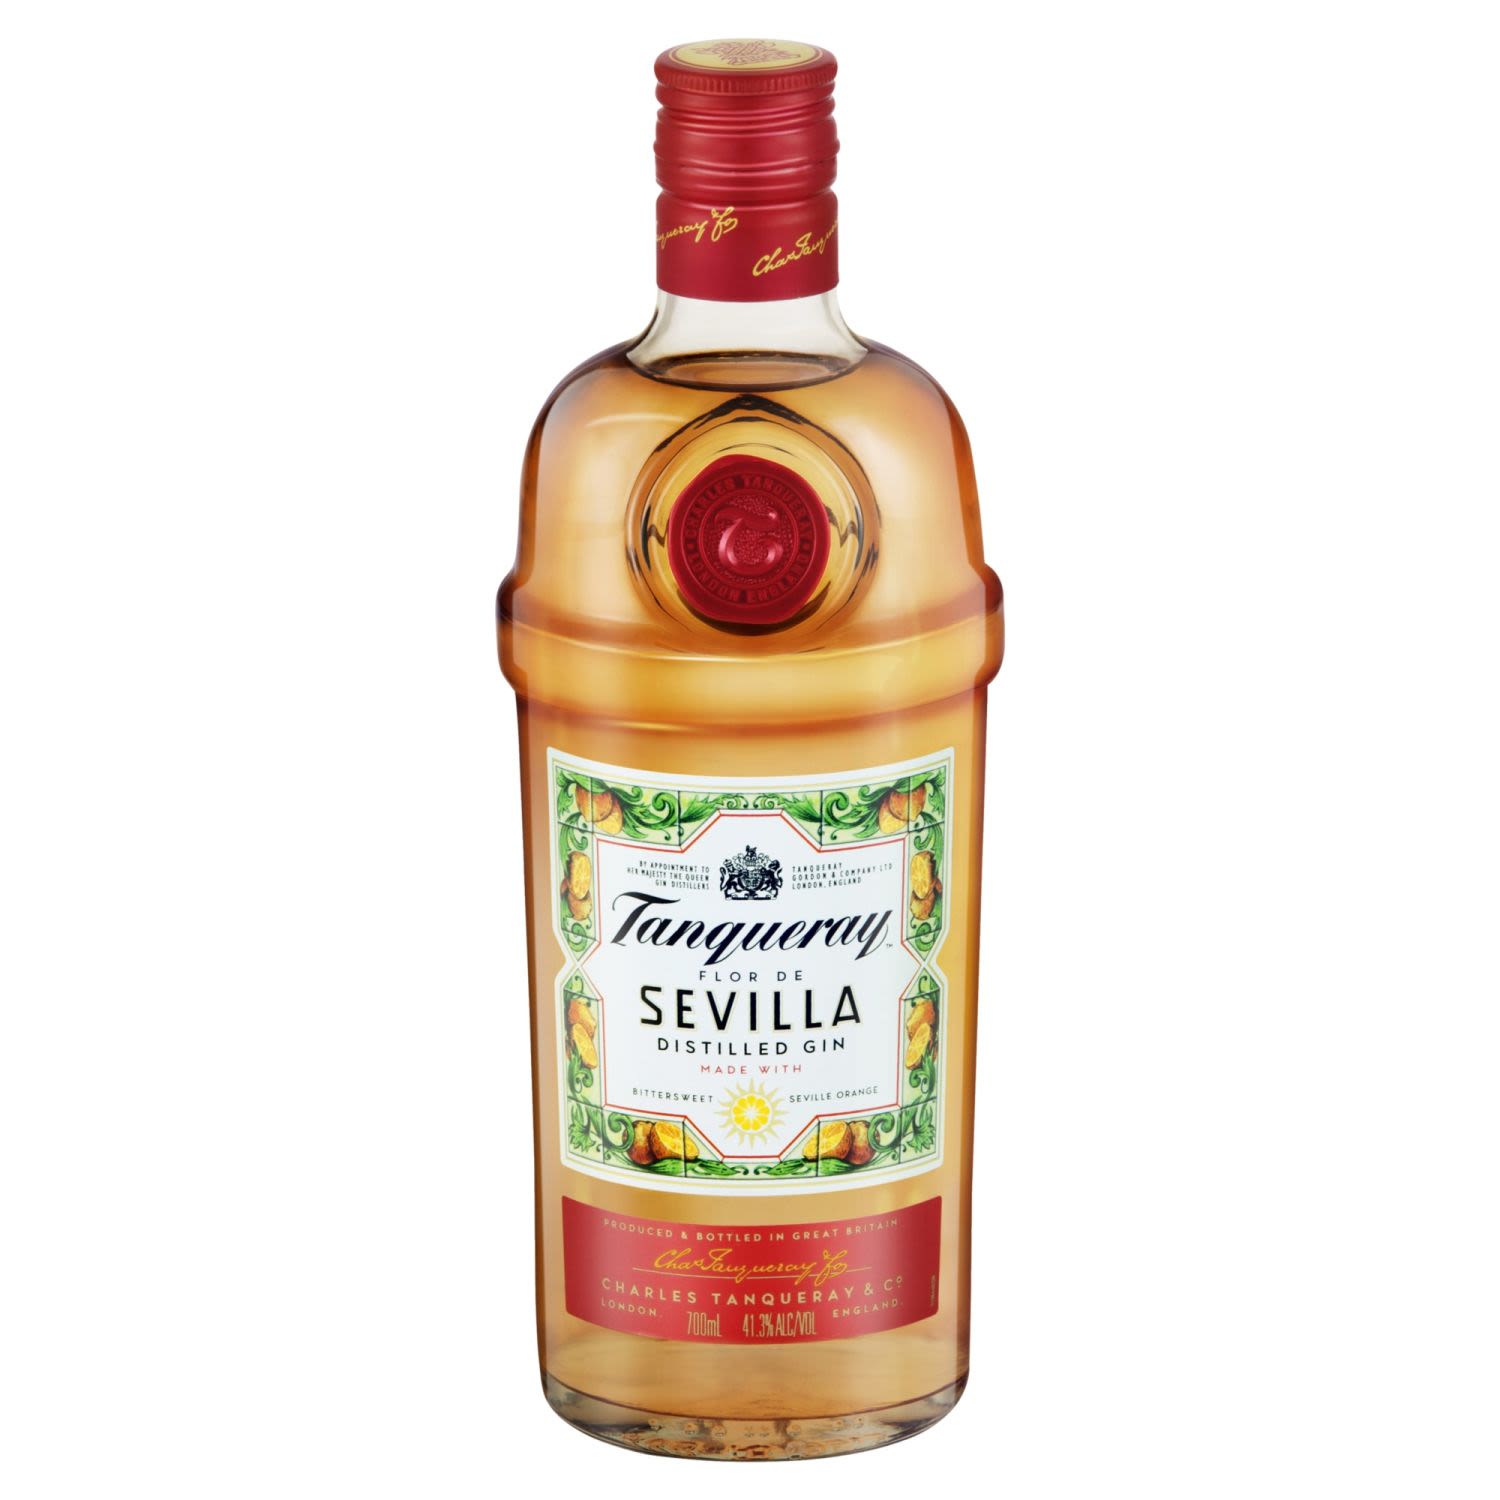 Tanqueray Flor De Sevilla Distilled Gin 700mL Bottle